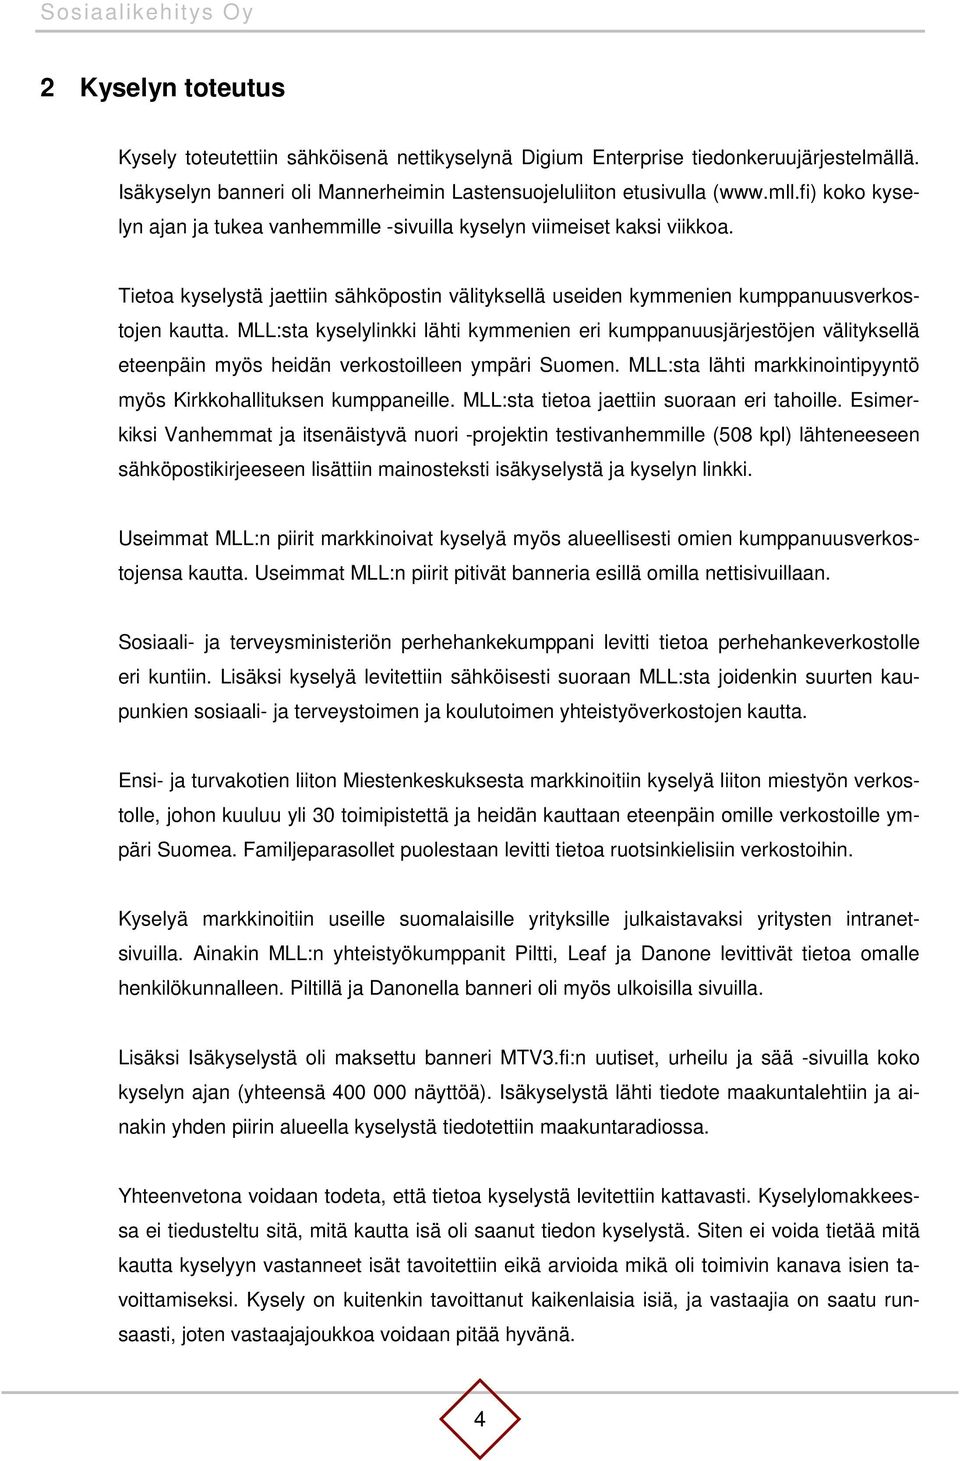 MLL:sta kyselylinkki lähti kymmenien eri kumppanuusjärjestöjen välityksellä eteenpäin myös heidän verkostoilleen ympäri Suomen. MLL:sta lähti markkinointipyyntö myös Kirkkohallituksen kumppaneille.